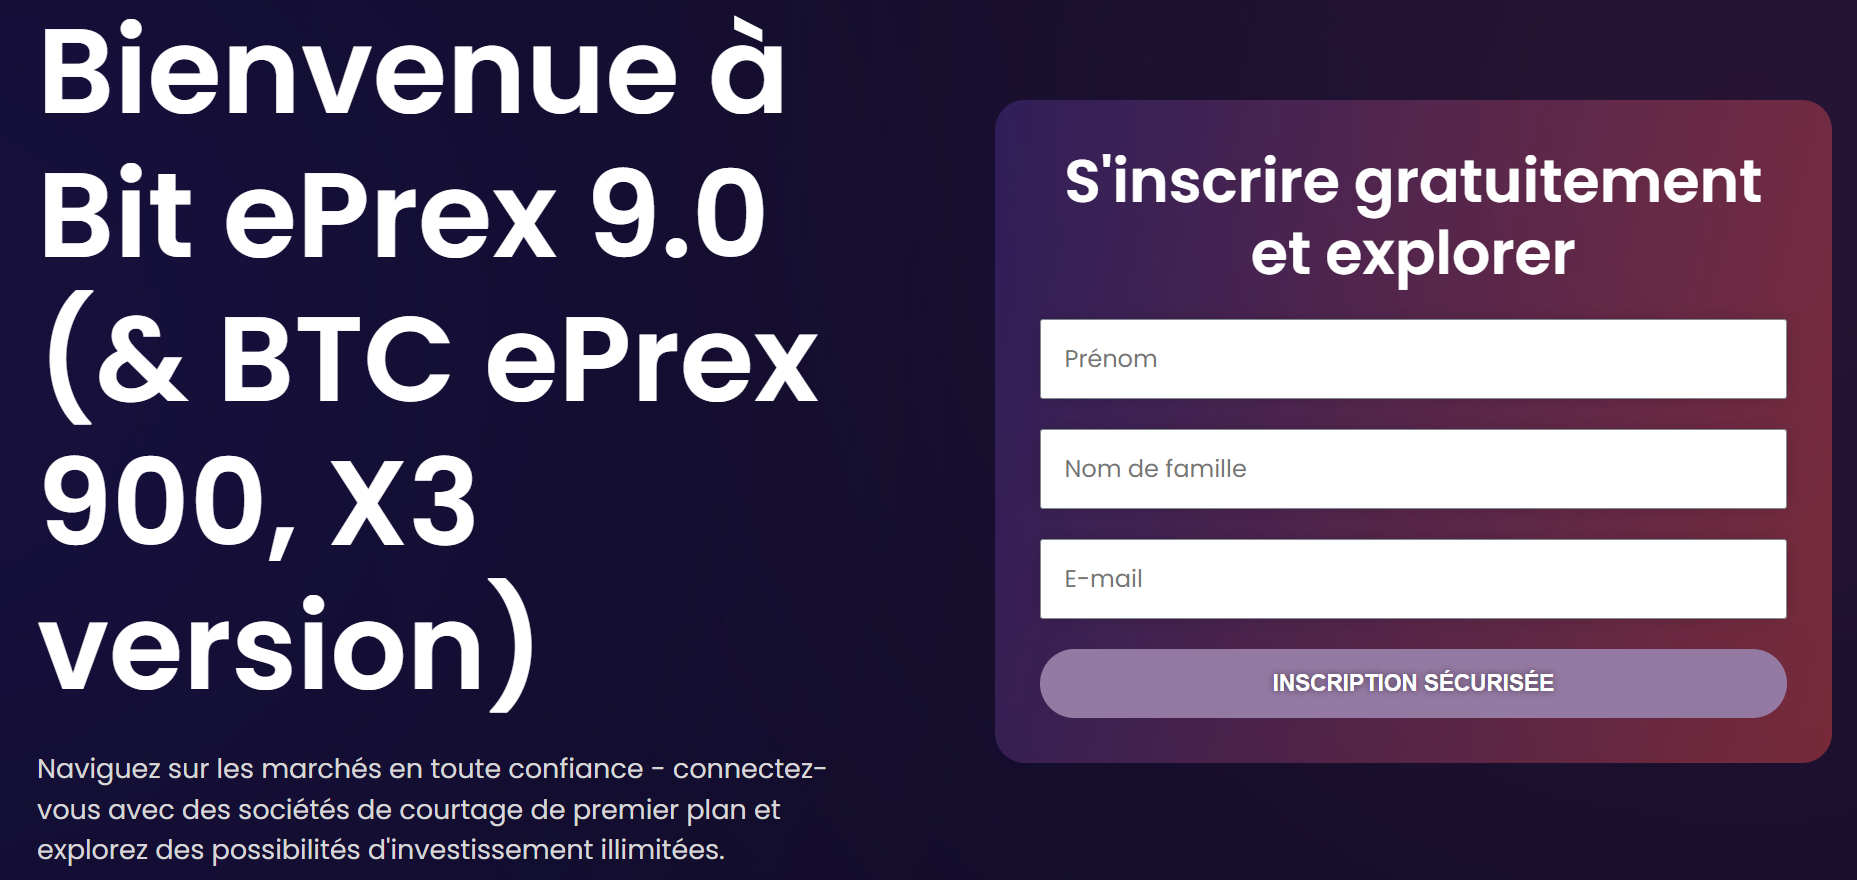 Interface de la plateforme Bit ePrex 9.0